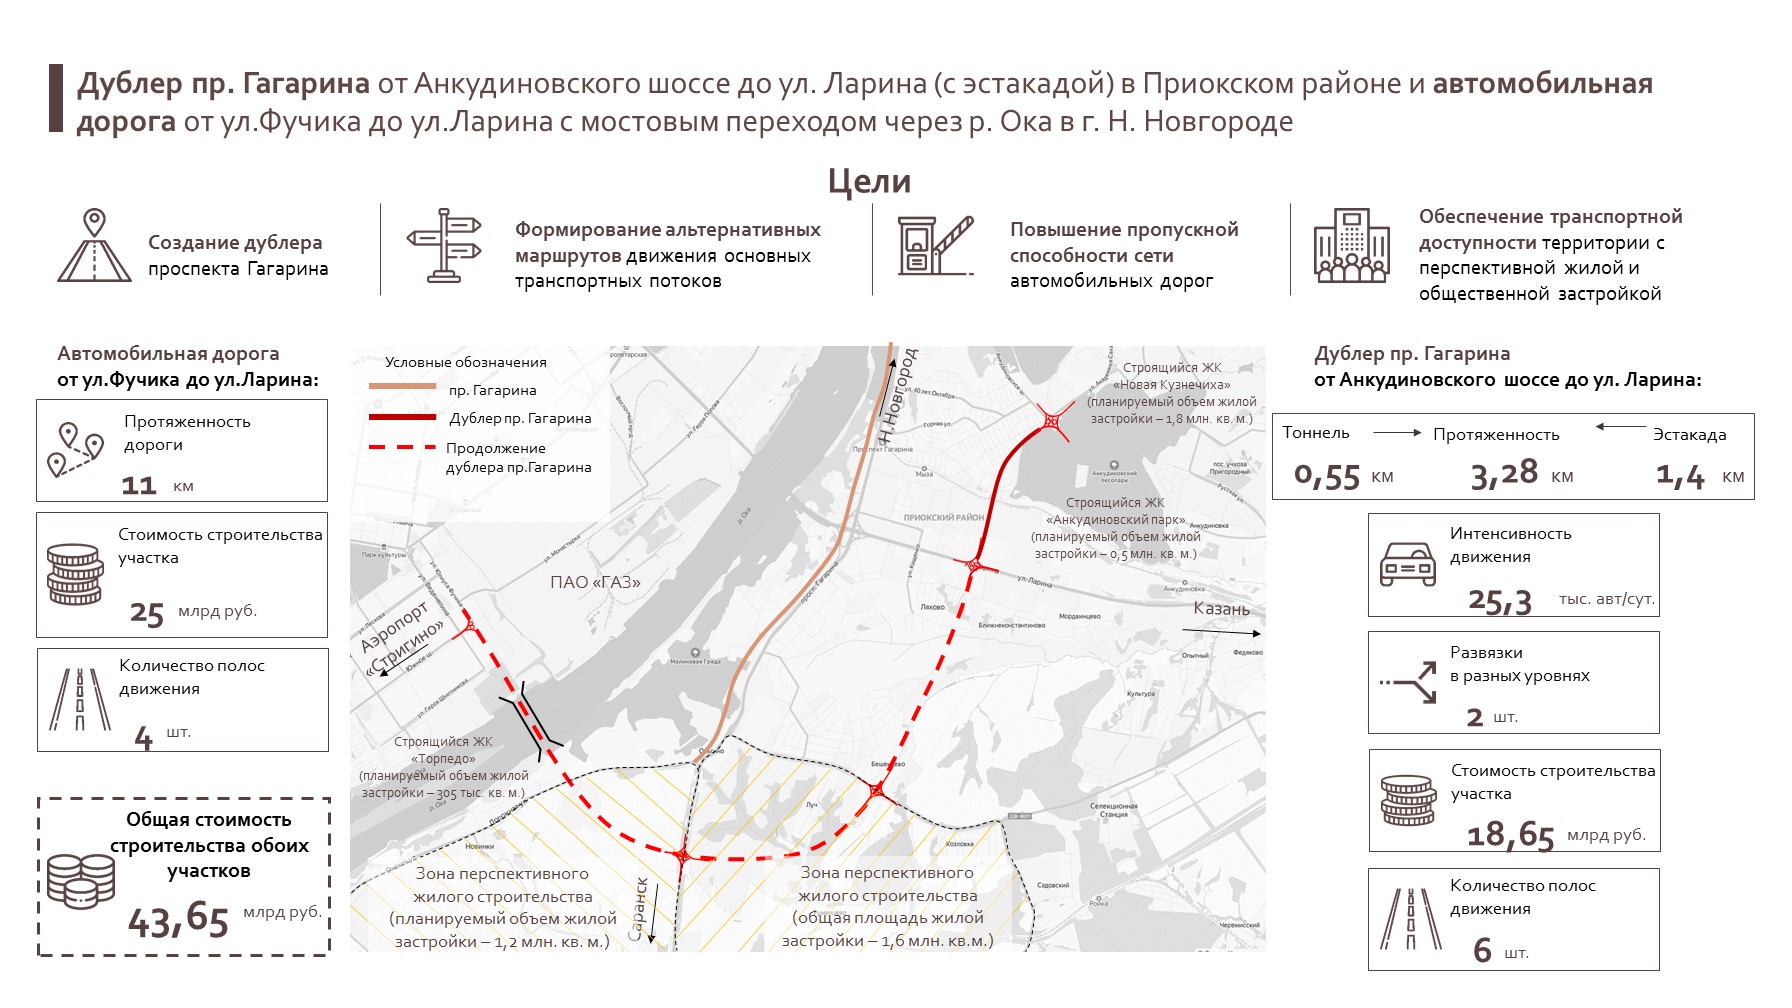 Московская компания спроектирует третью очередь дублера проспекта Гагарина в Нижнем Новгороде  - фото 1